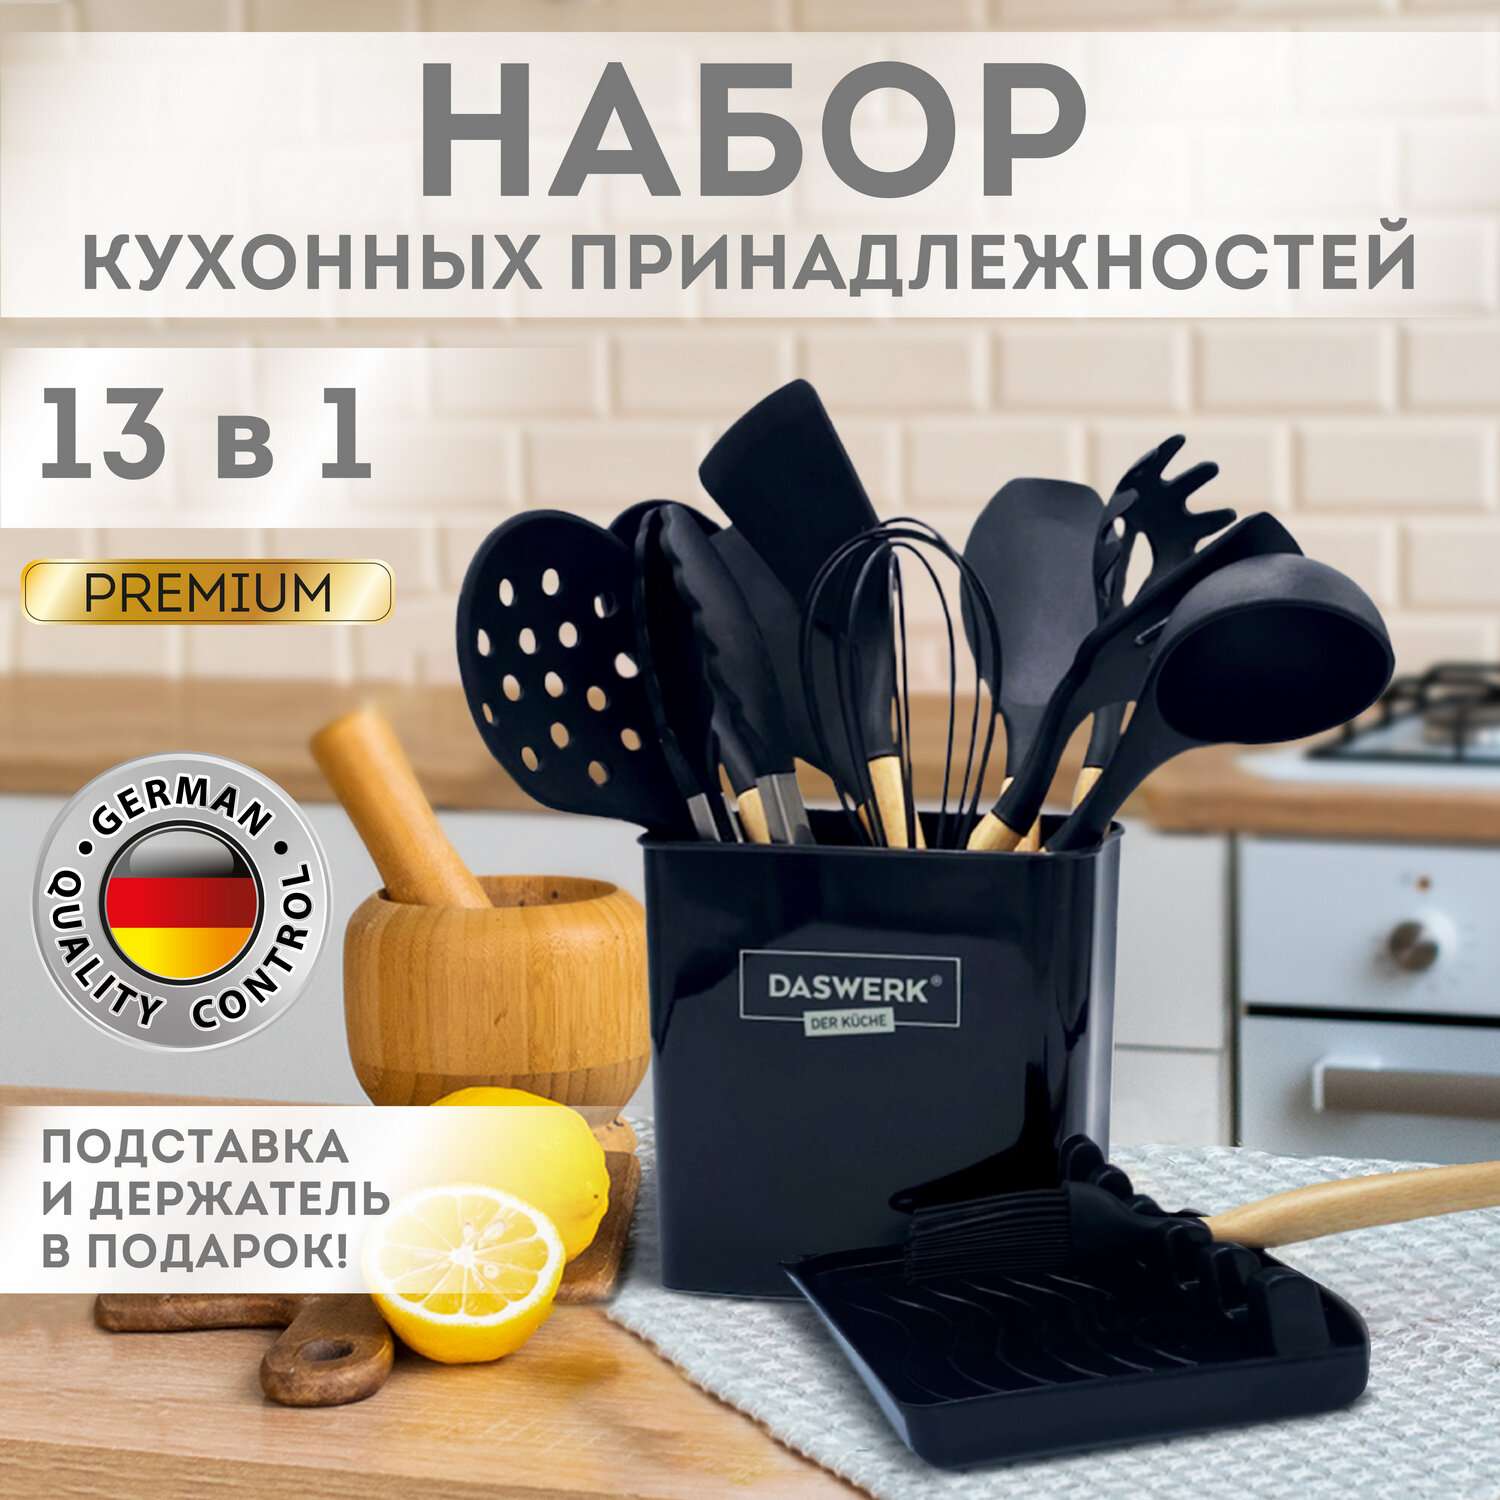 Набор кухонных принадлежностей DASWERK силиконовые с деревянными ручками 13 в 1 - фото 2